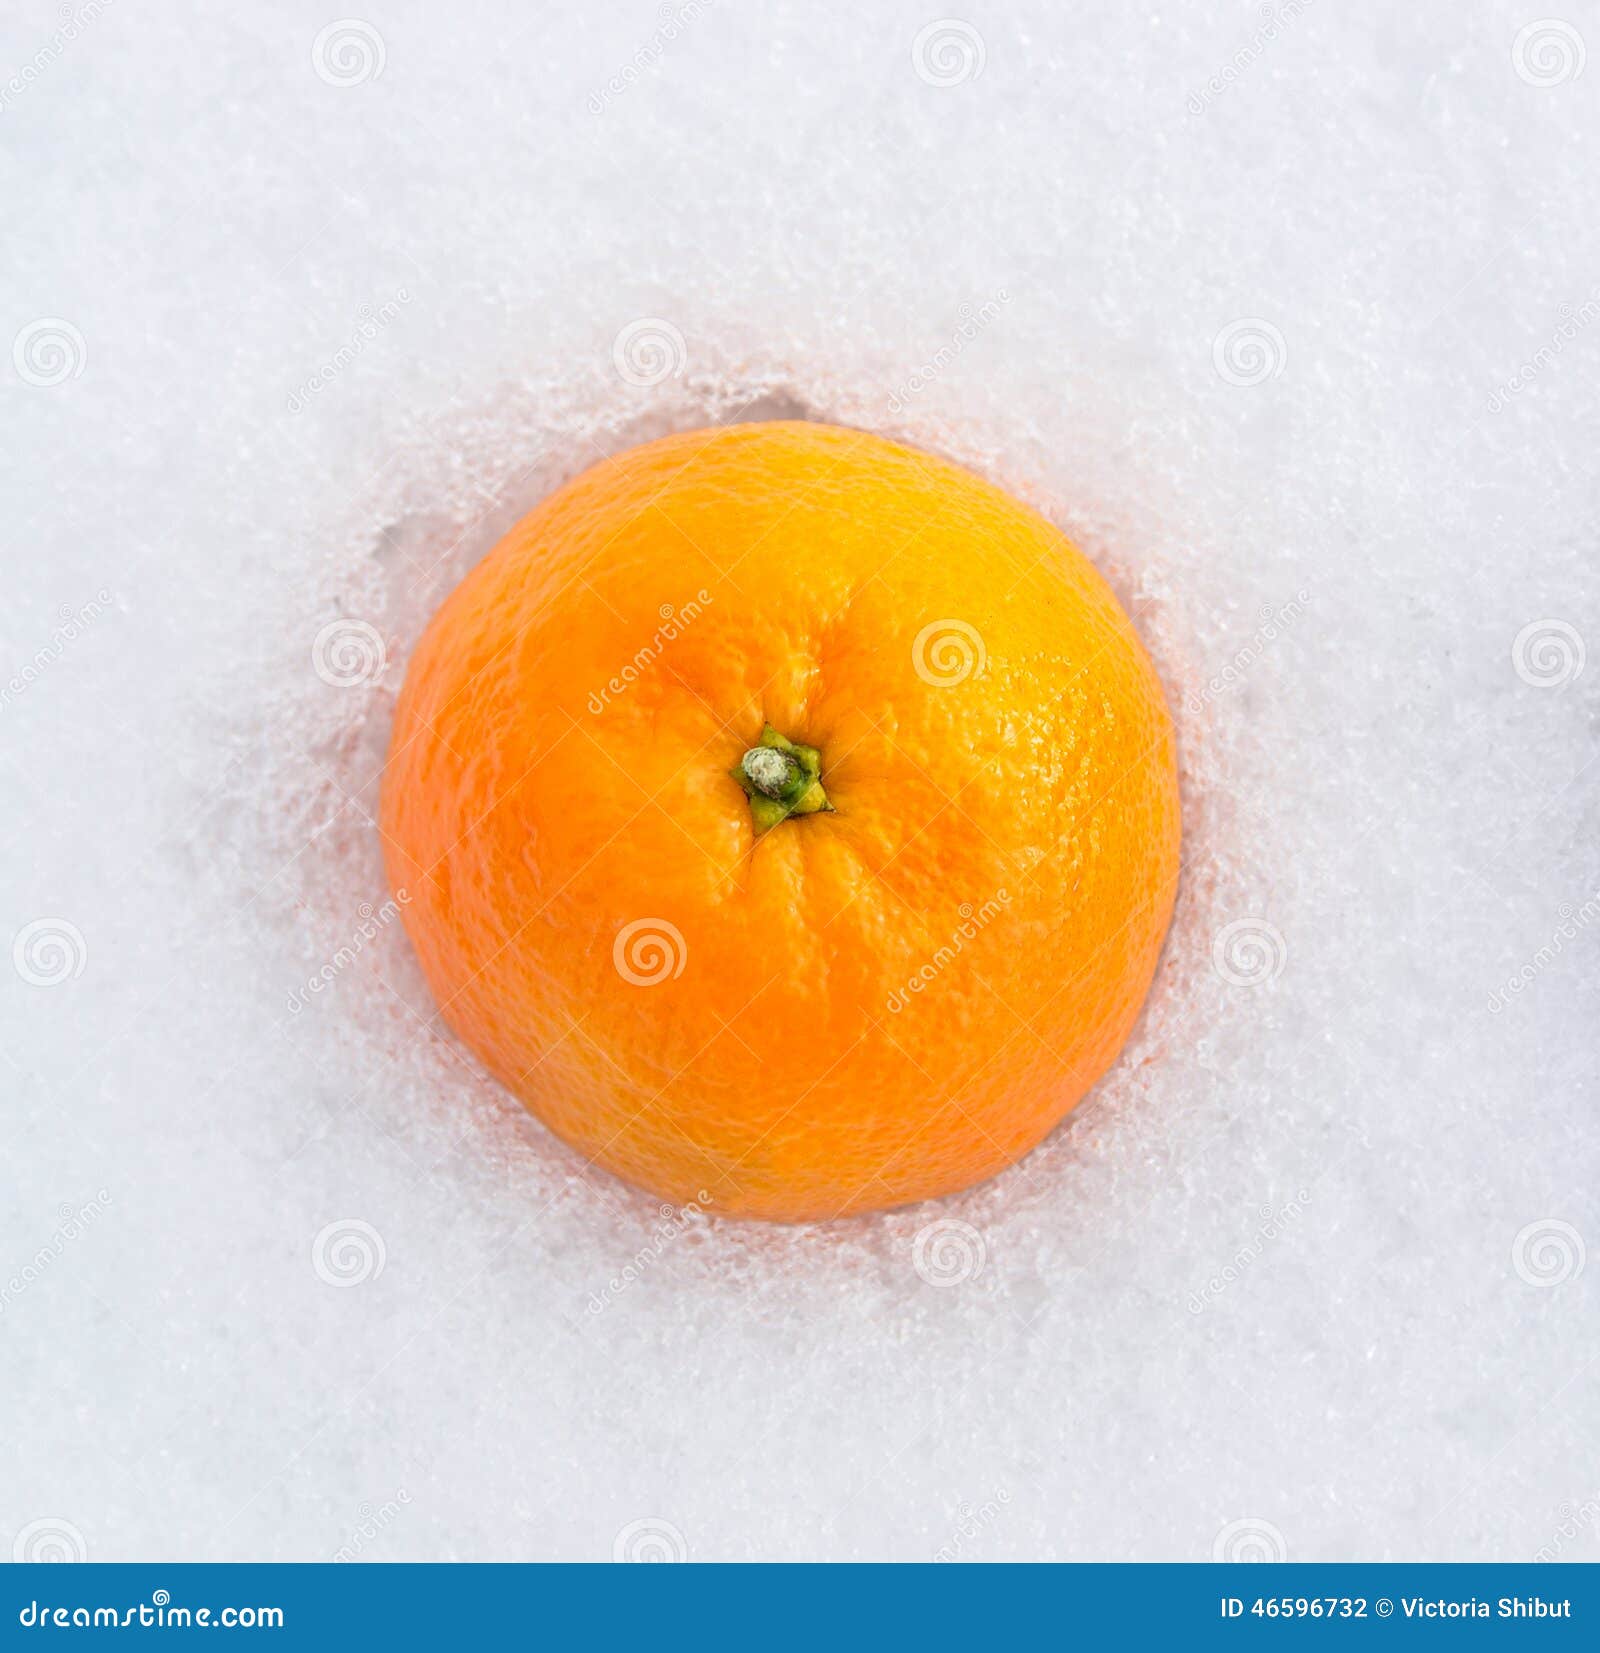 В пакете лежат мандарины. Апельсин на снегу вид сверху.